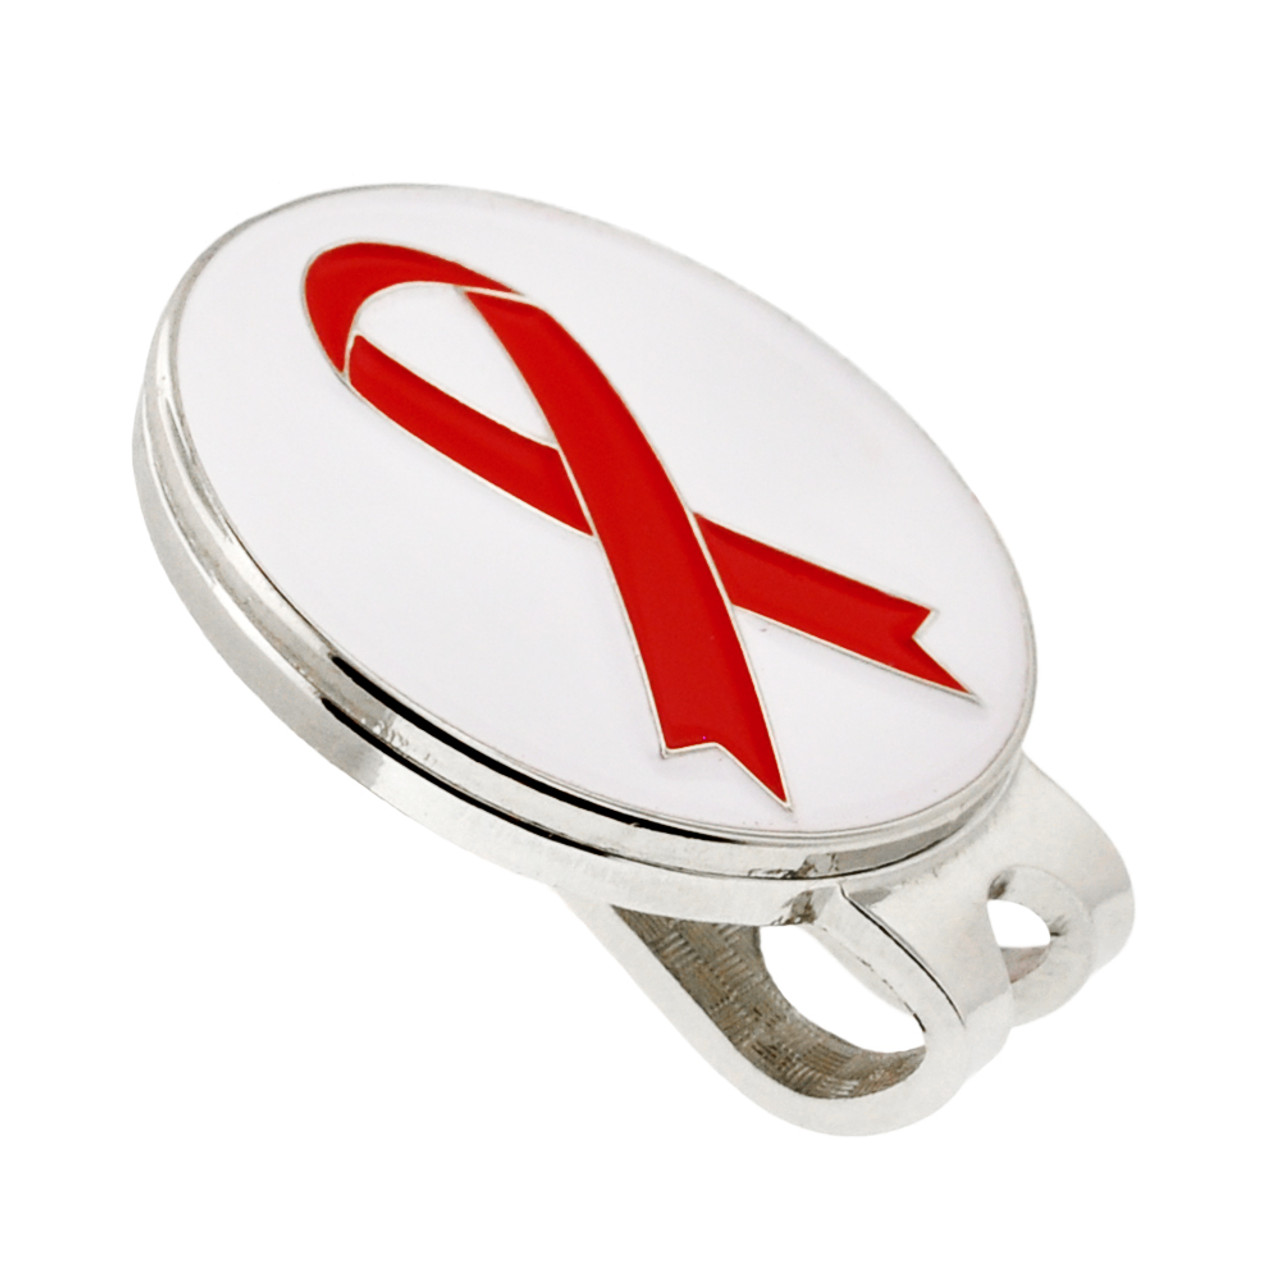 Red Awareness Ribbons | Lapel Pins